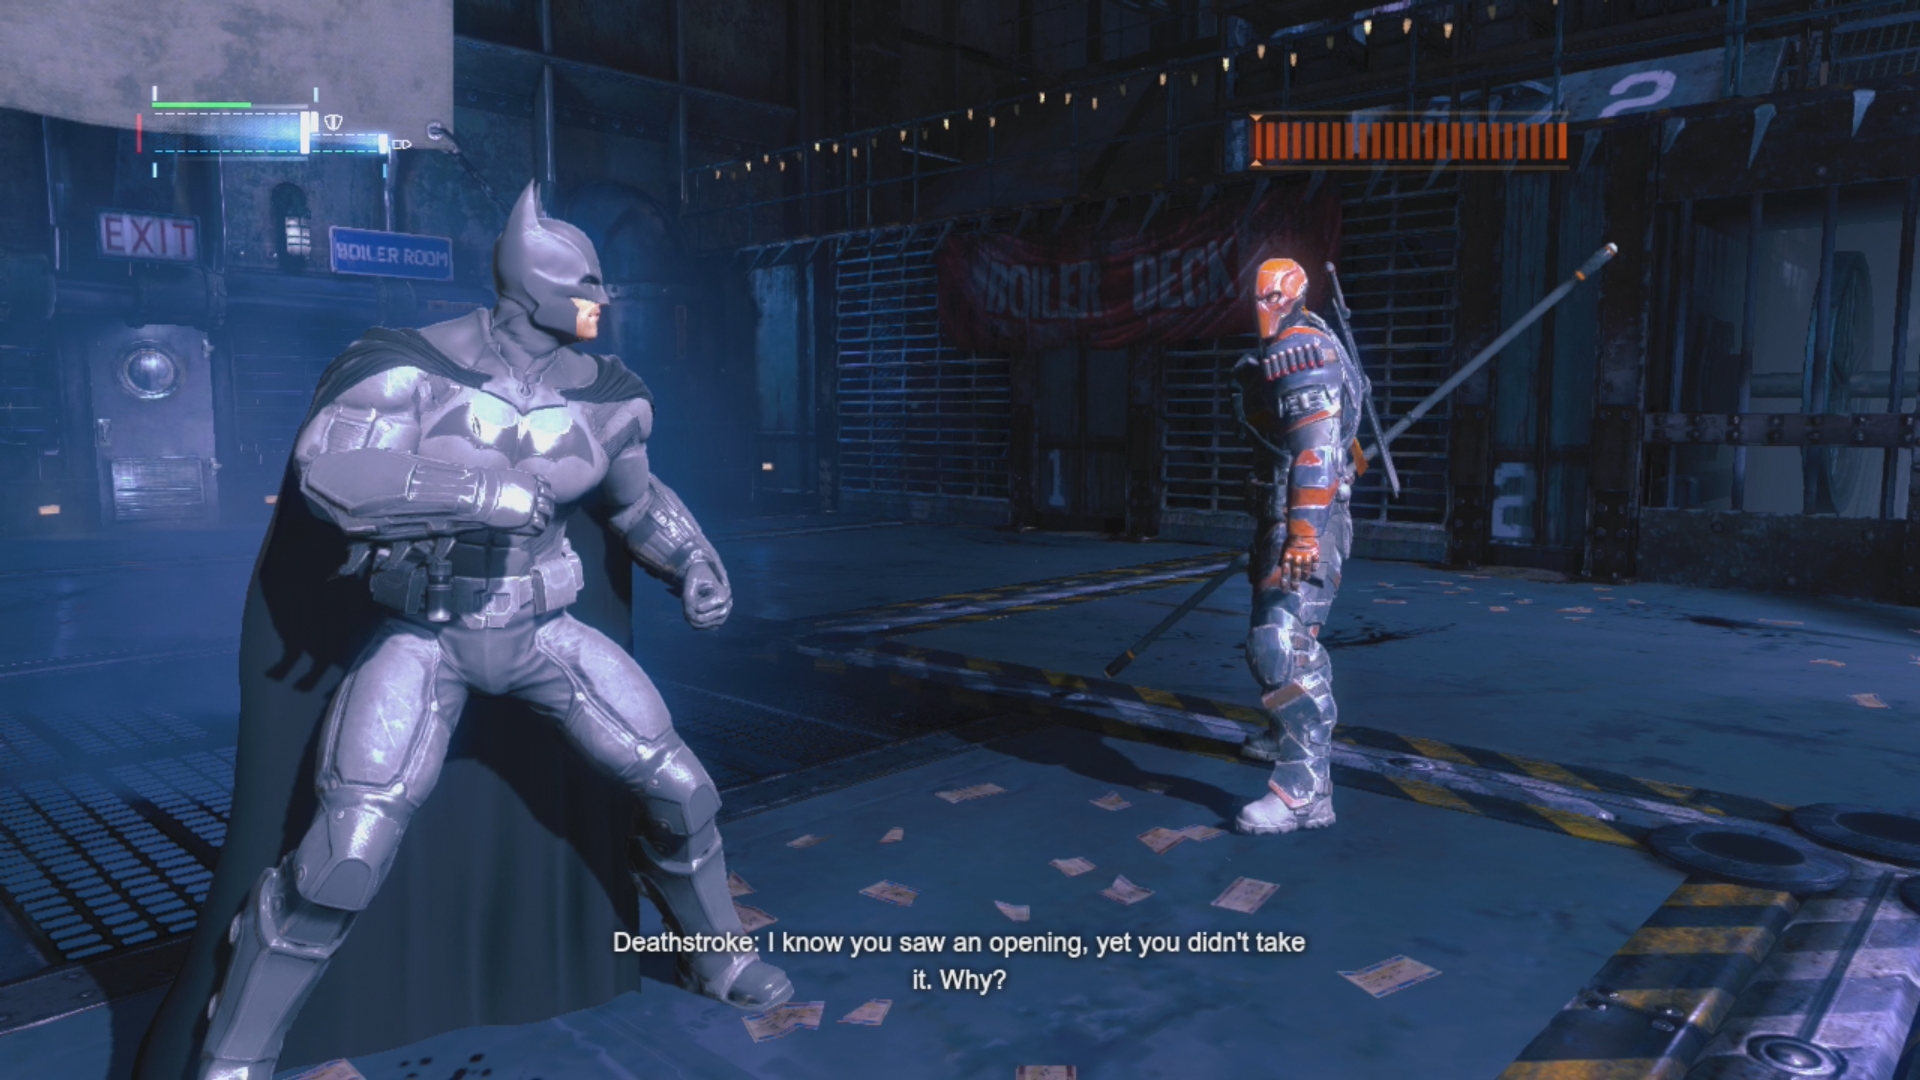 Batman: Arkham Origins Review e Análise 